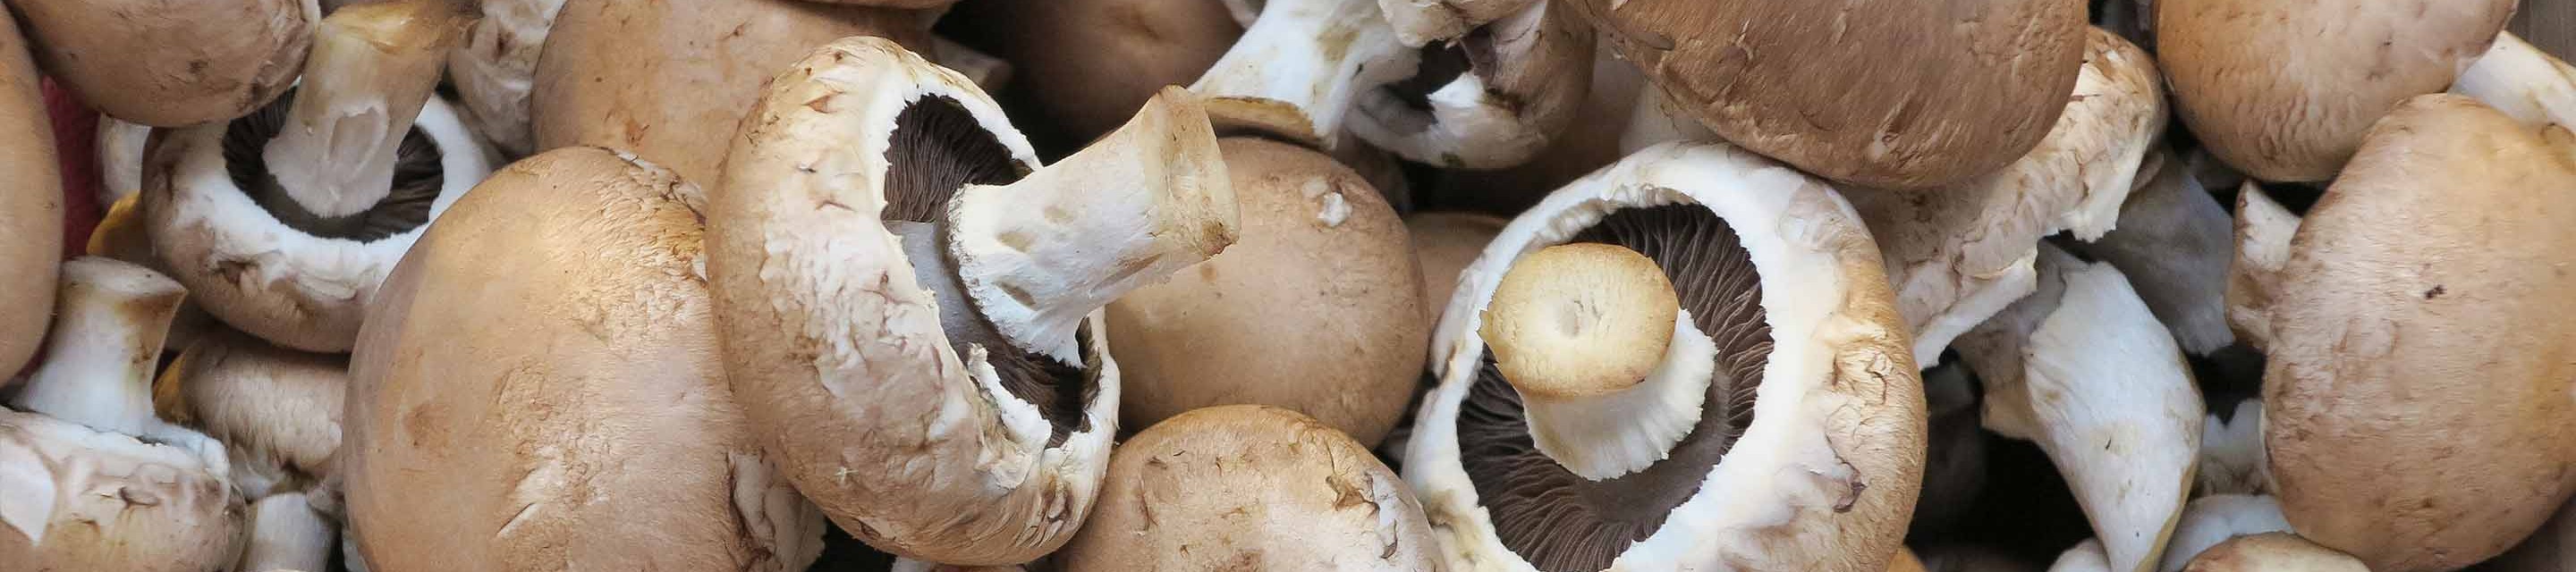 Meadow Mushrooms